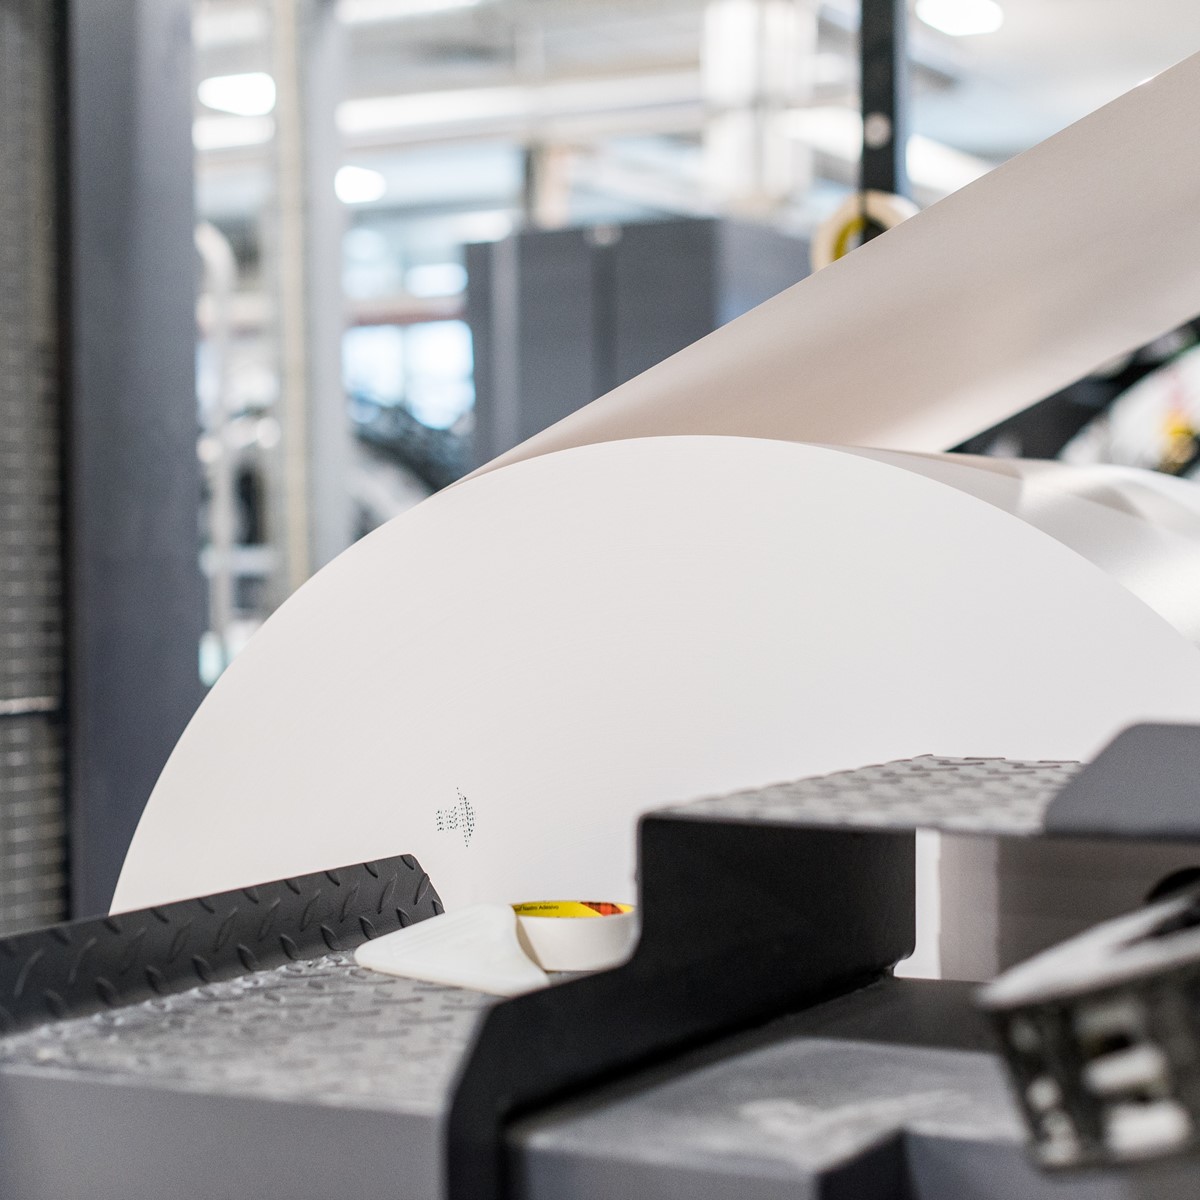 Clays maximiert die Maschinenverfügbarkeit des Digitaldrucks mit Contiweb Nonstop-Abwickler